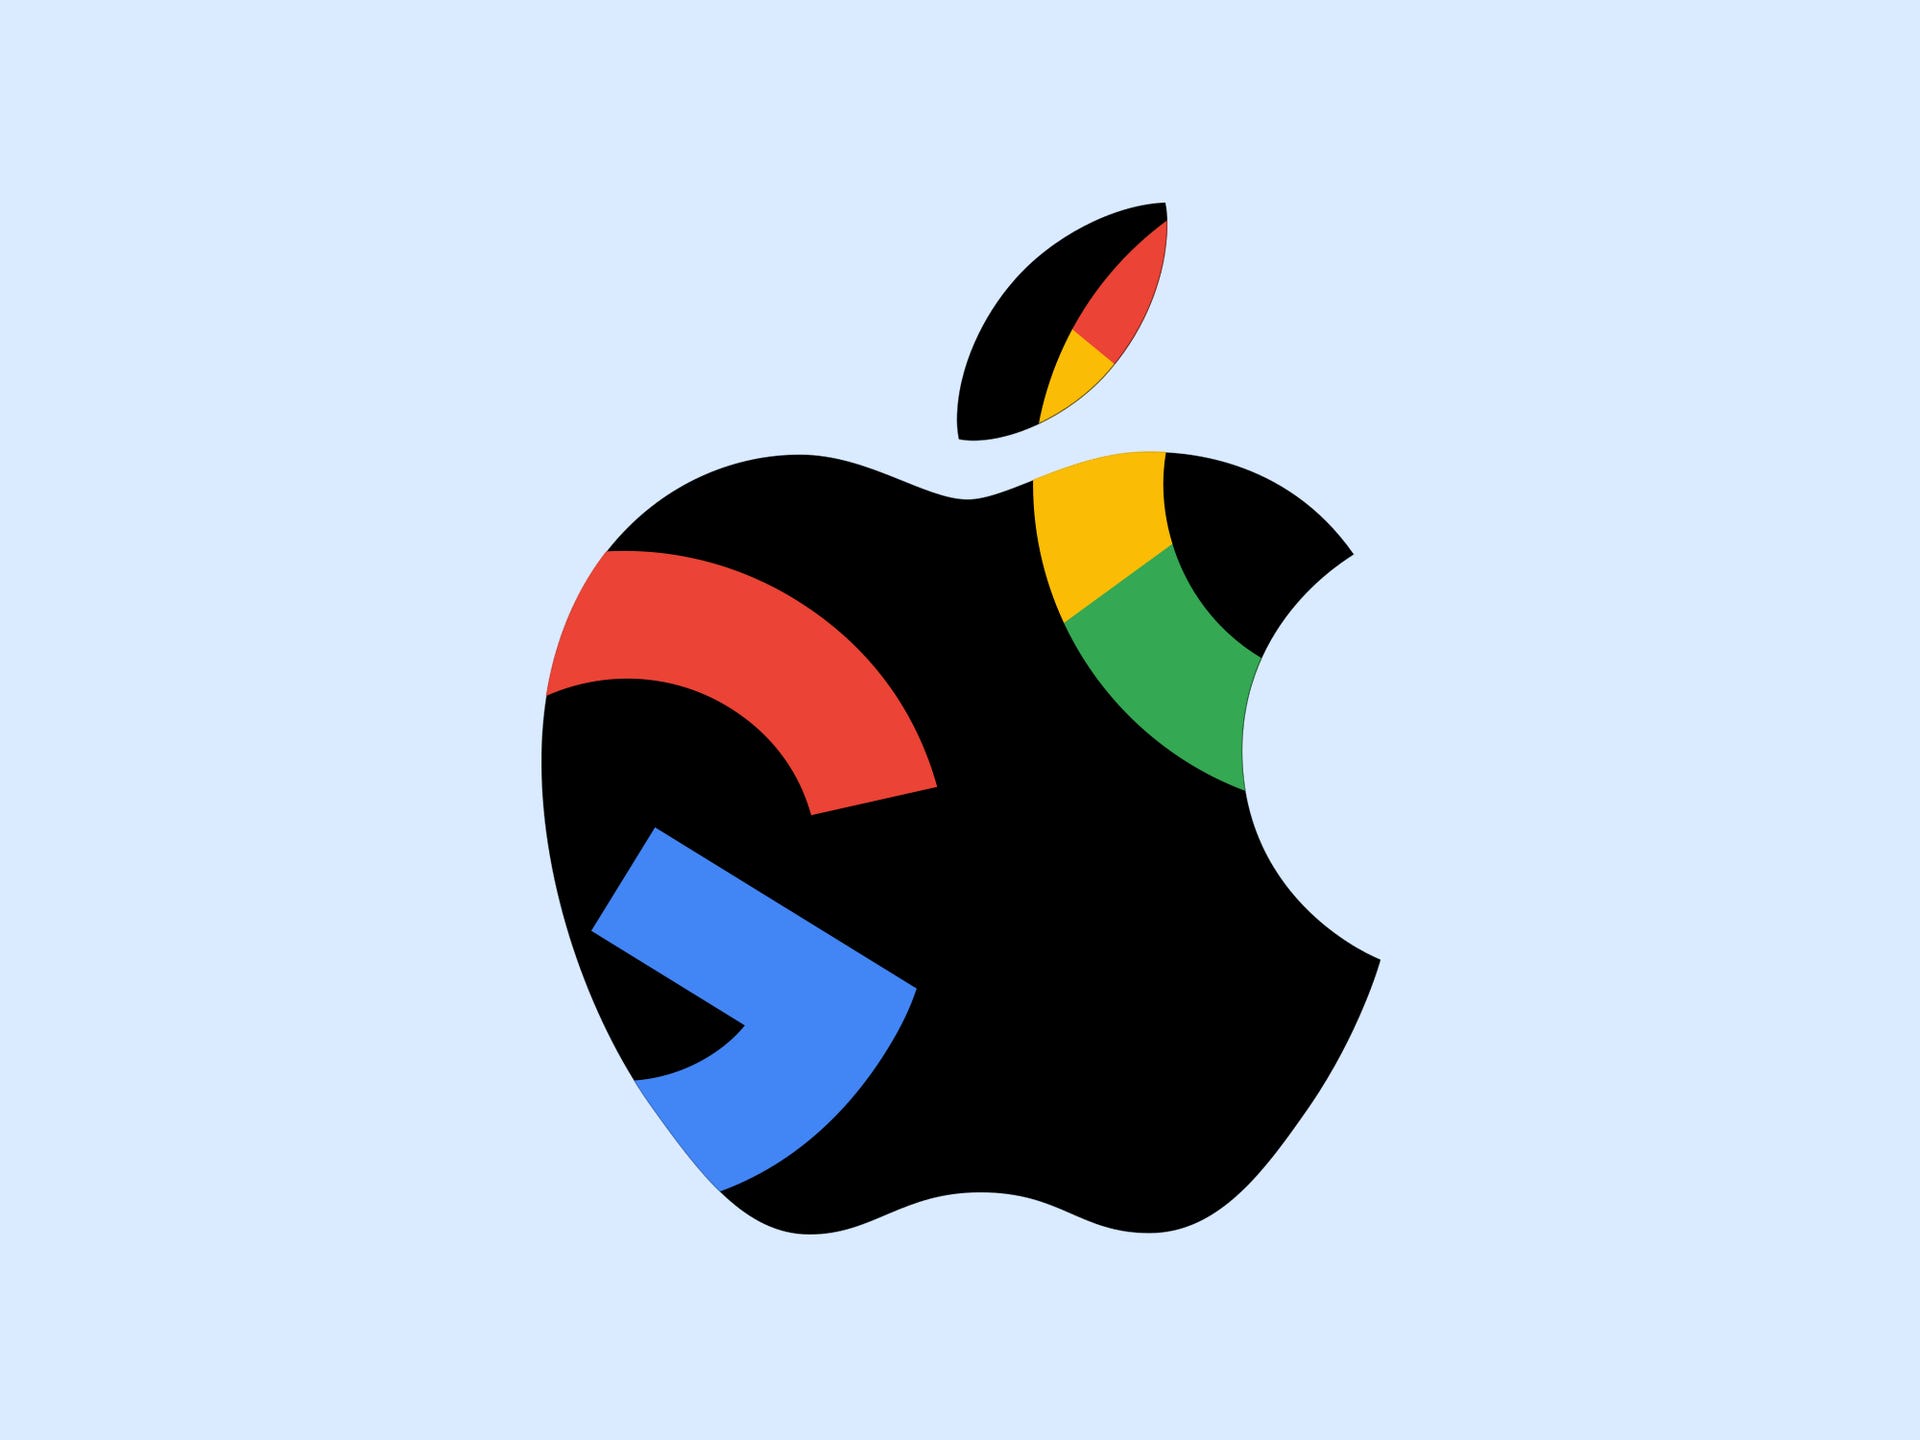 Ein Apple-Logo mit zwei Google-Logos darin.